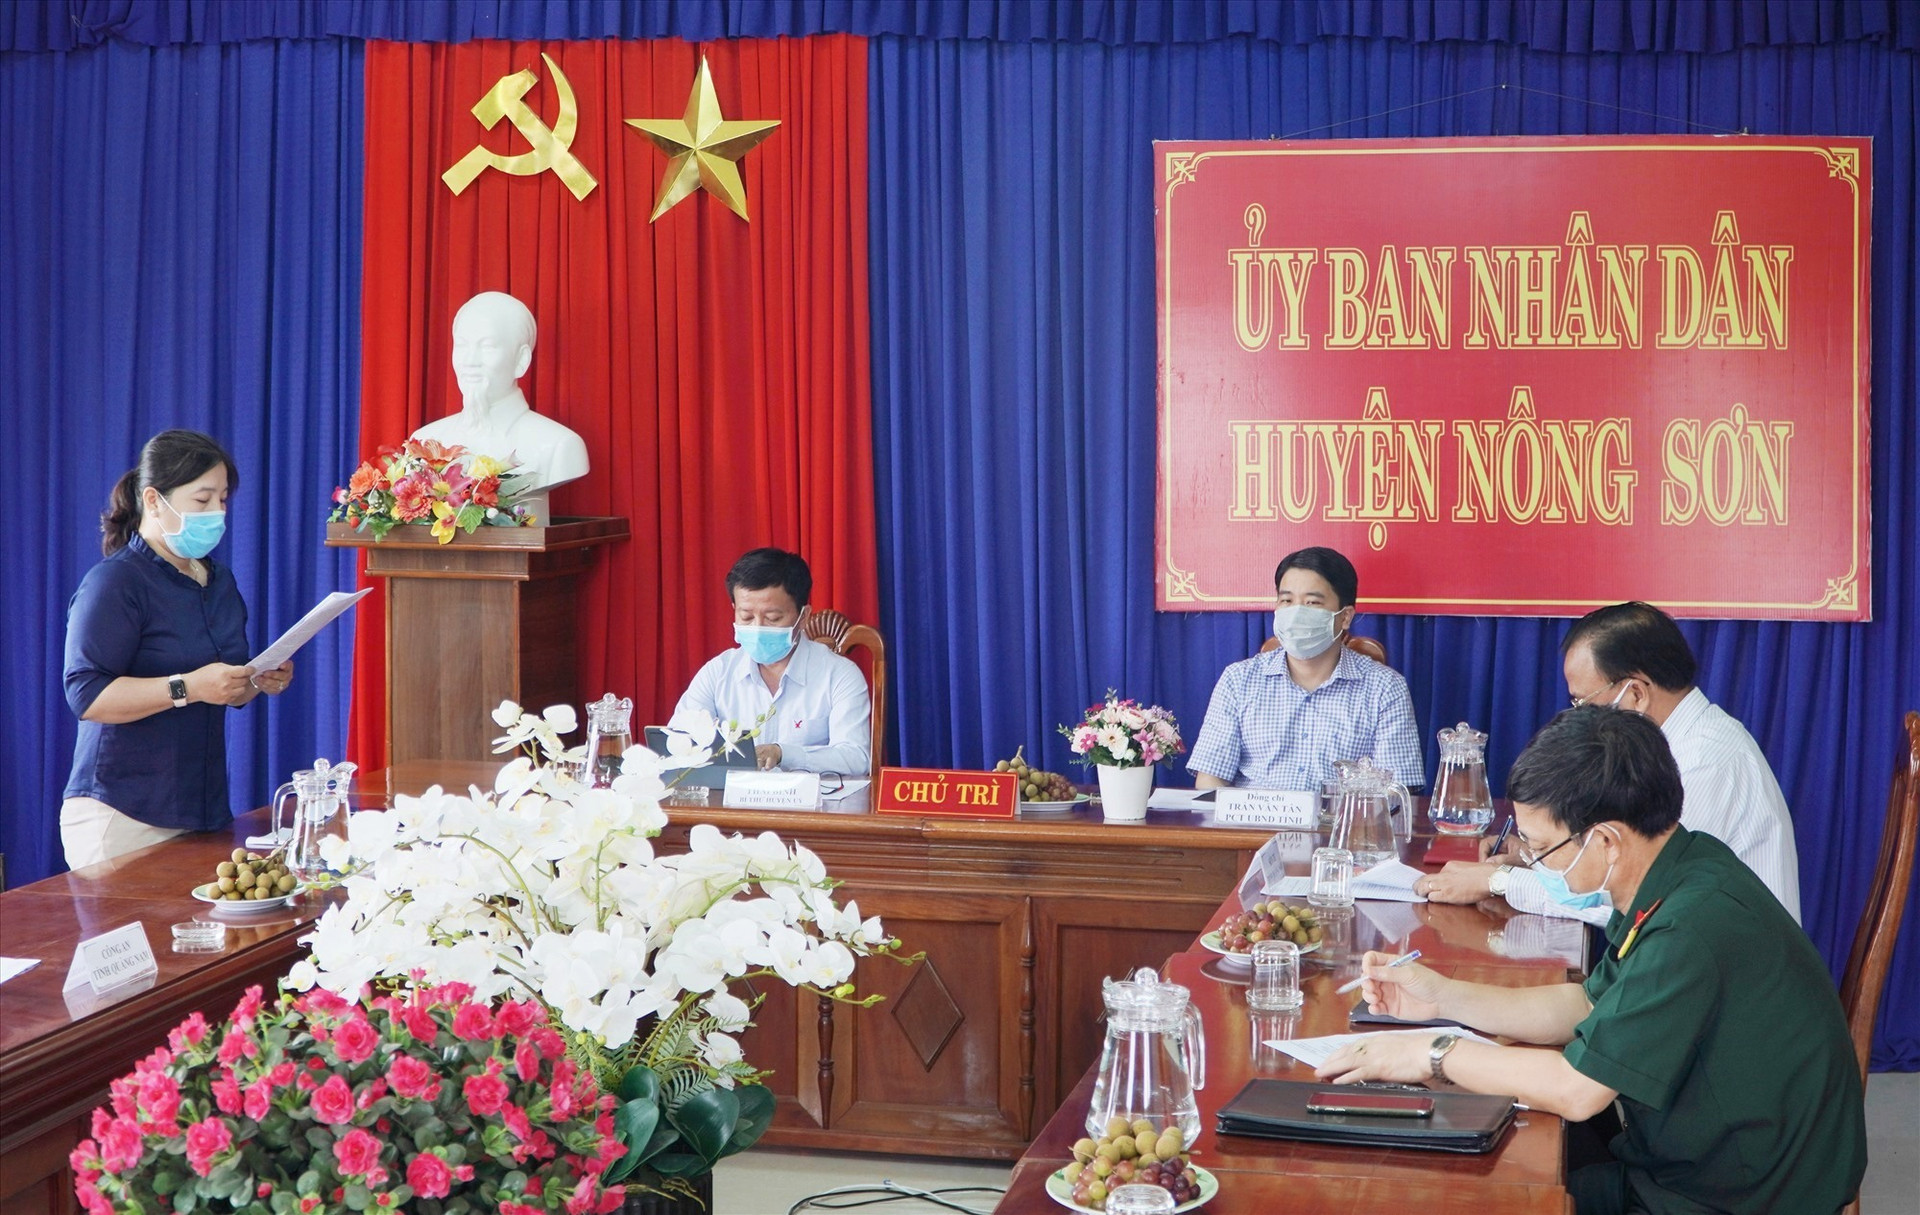 Phó Chủ tịch UBND tỉnh Trần Văn Tân phát biểu chỉ đạo công tác phòng, chống dịch tại buổi làm việc với lãnh đạo huyện Nông Sơn. Ảnh: PHAN VINH